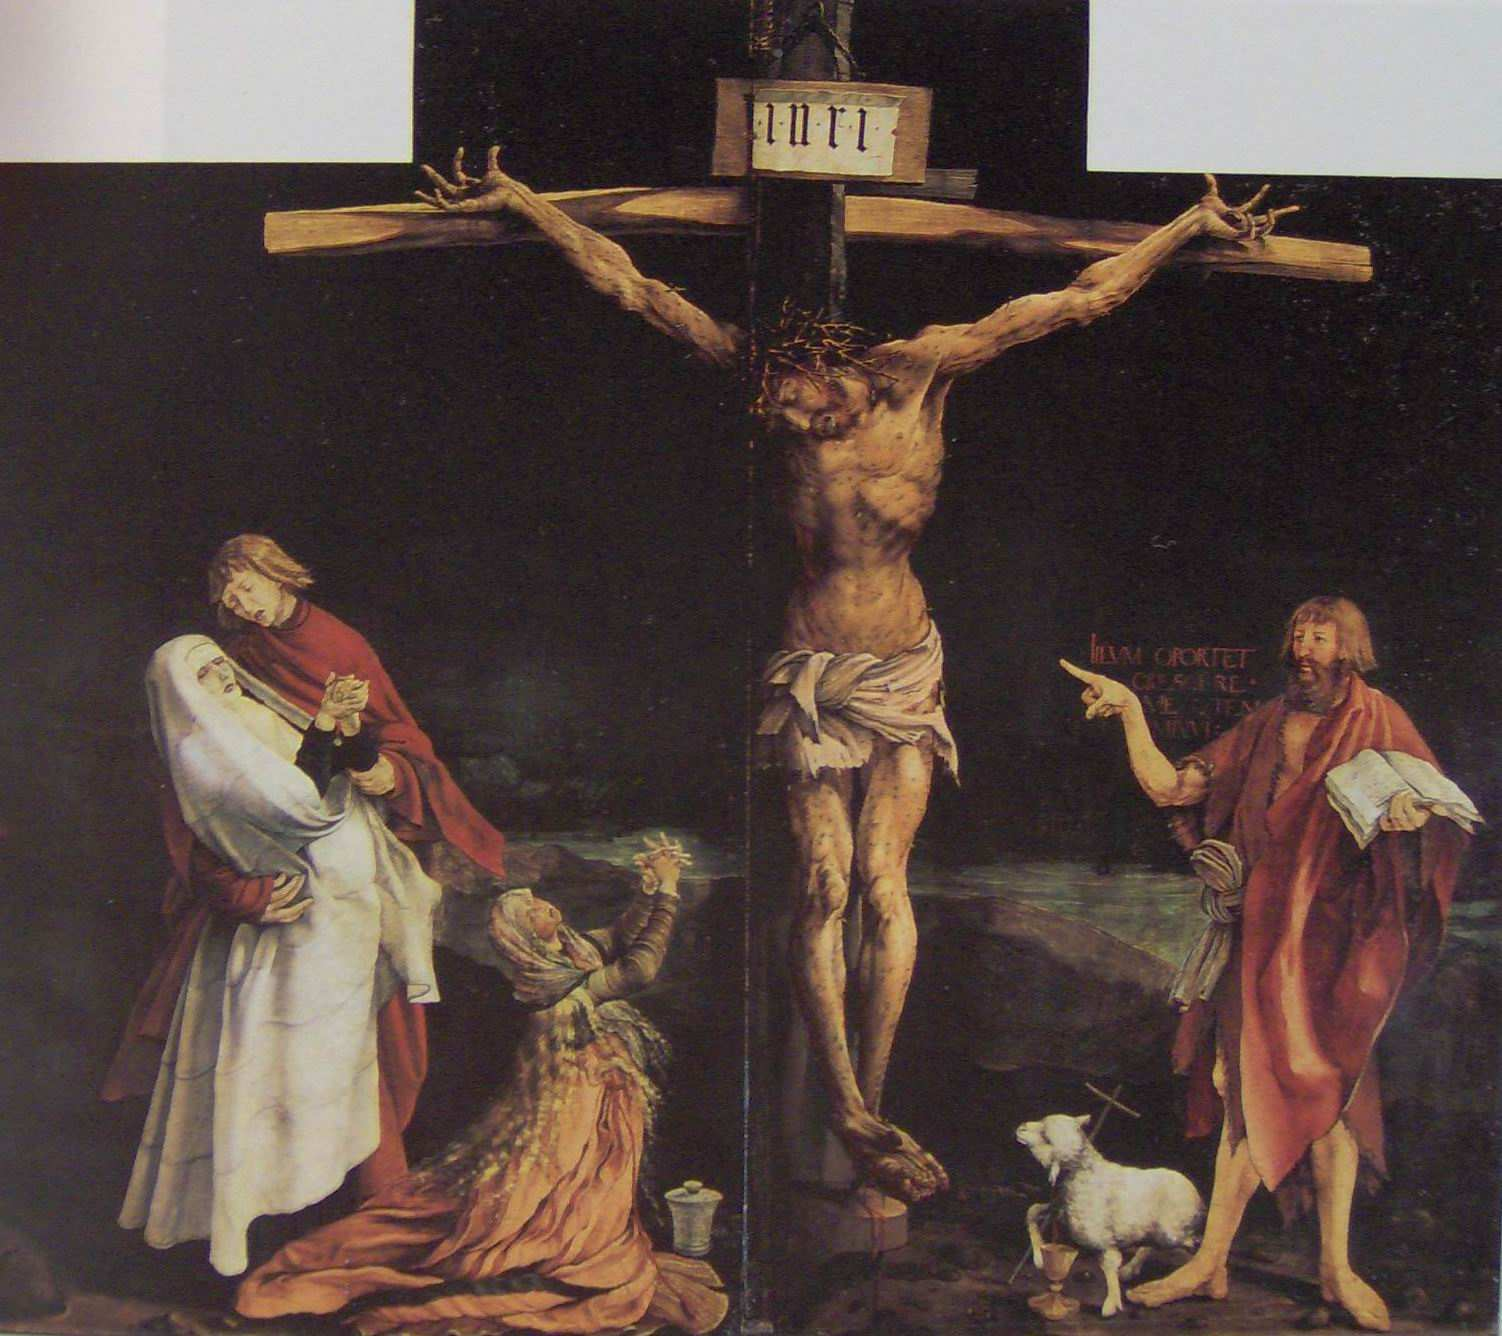 Τίτλος: Η Σταύρωση Καλλιτέχνης: Ματίας Γκρύνεβαλντ Χρονολογία: 1515 Υλικό: Λάδι σε ξύλο Περιγραφή: Η εικόνα αυτή αποτελεί ένα µέρος ενός πολύπτυχου που βρίσκεται στην Αγία Τράπεζα του µοναστηριού του